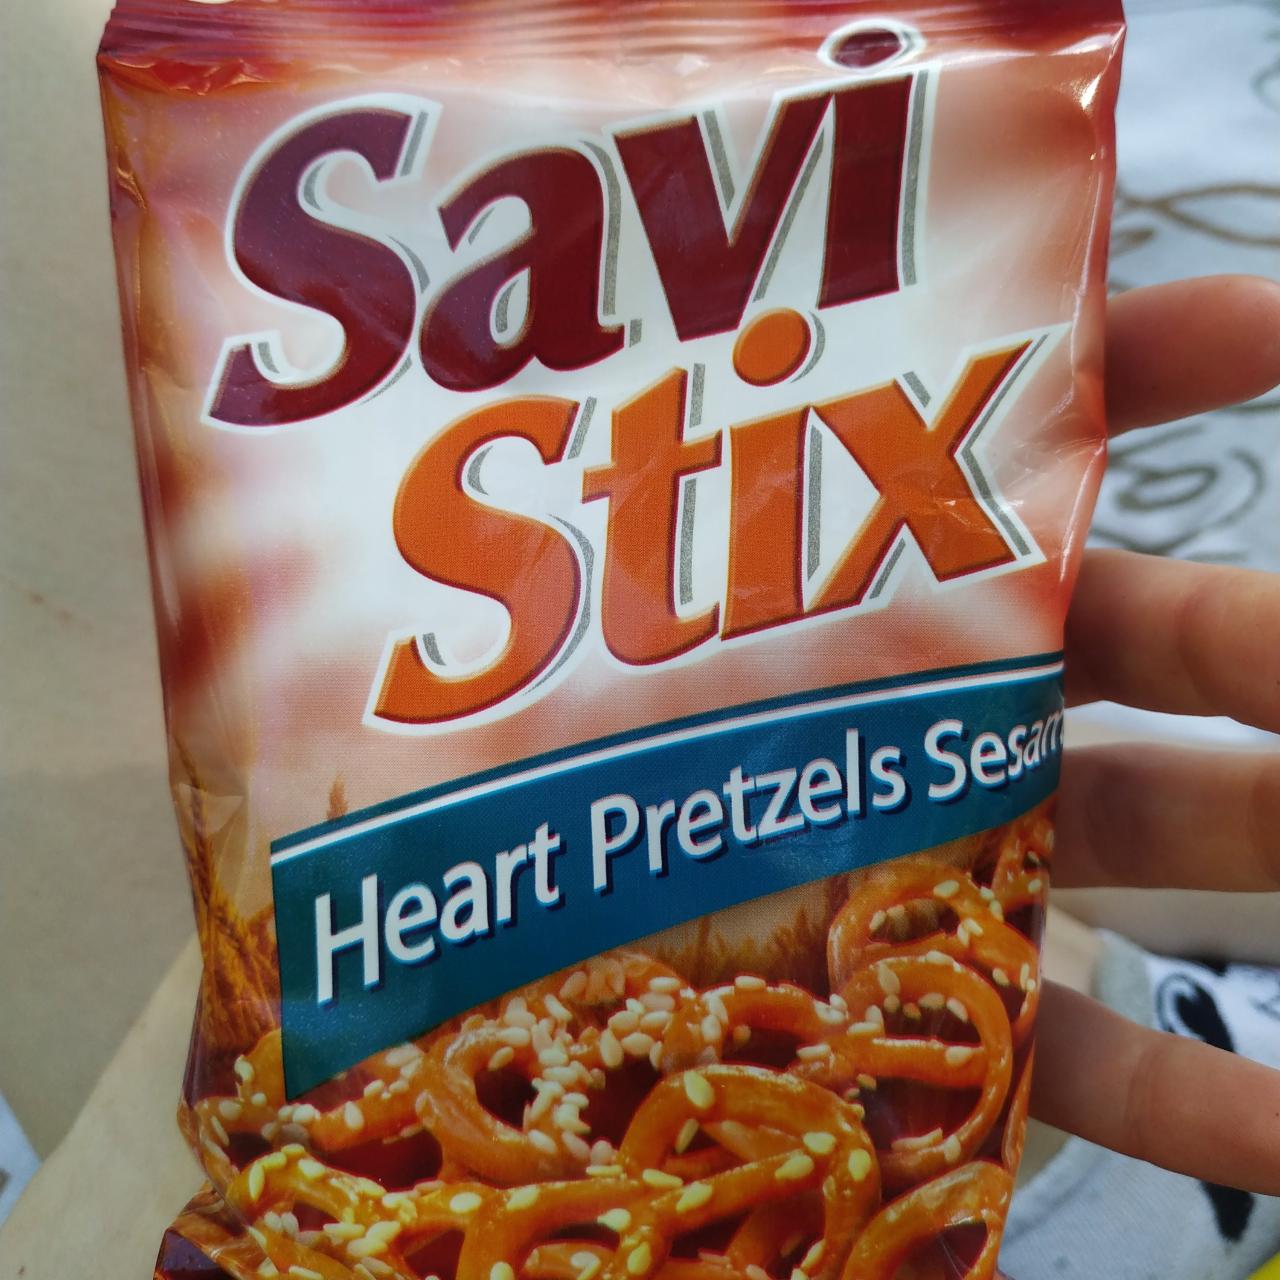 Фото - Брезли с кунжутом Heart pretzels Savi Stix